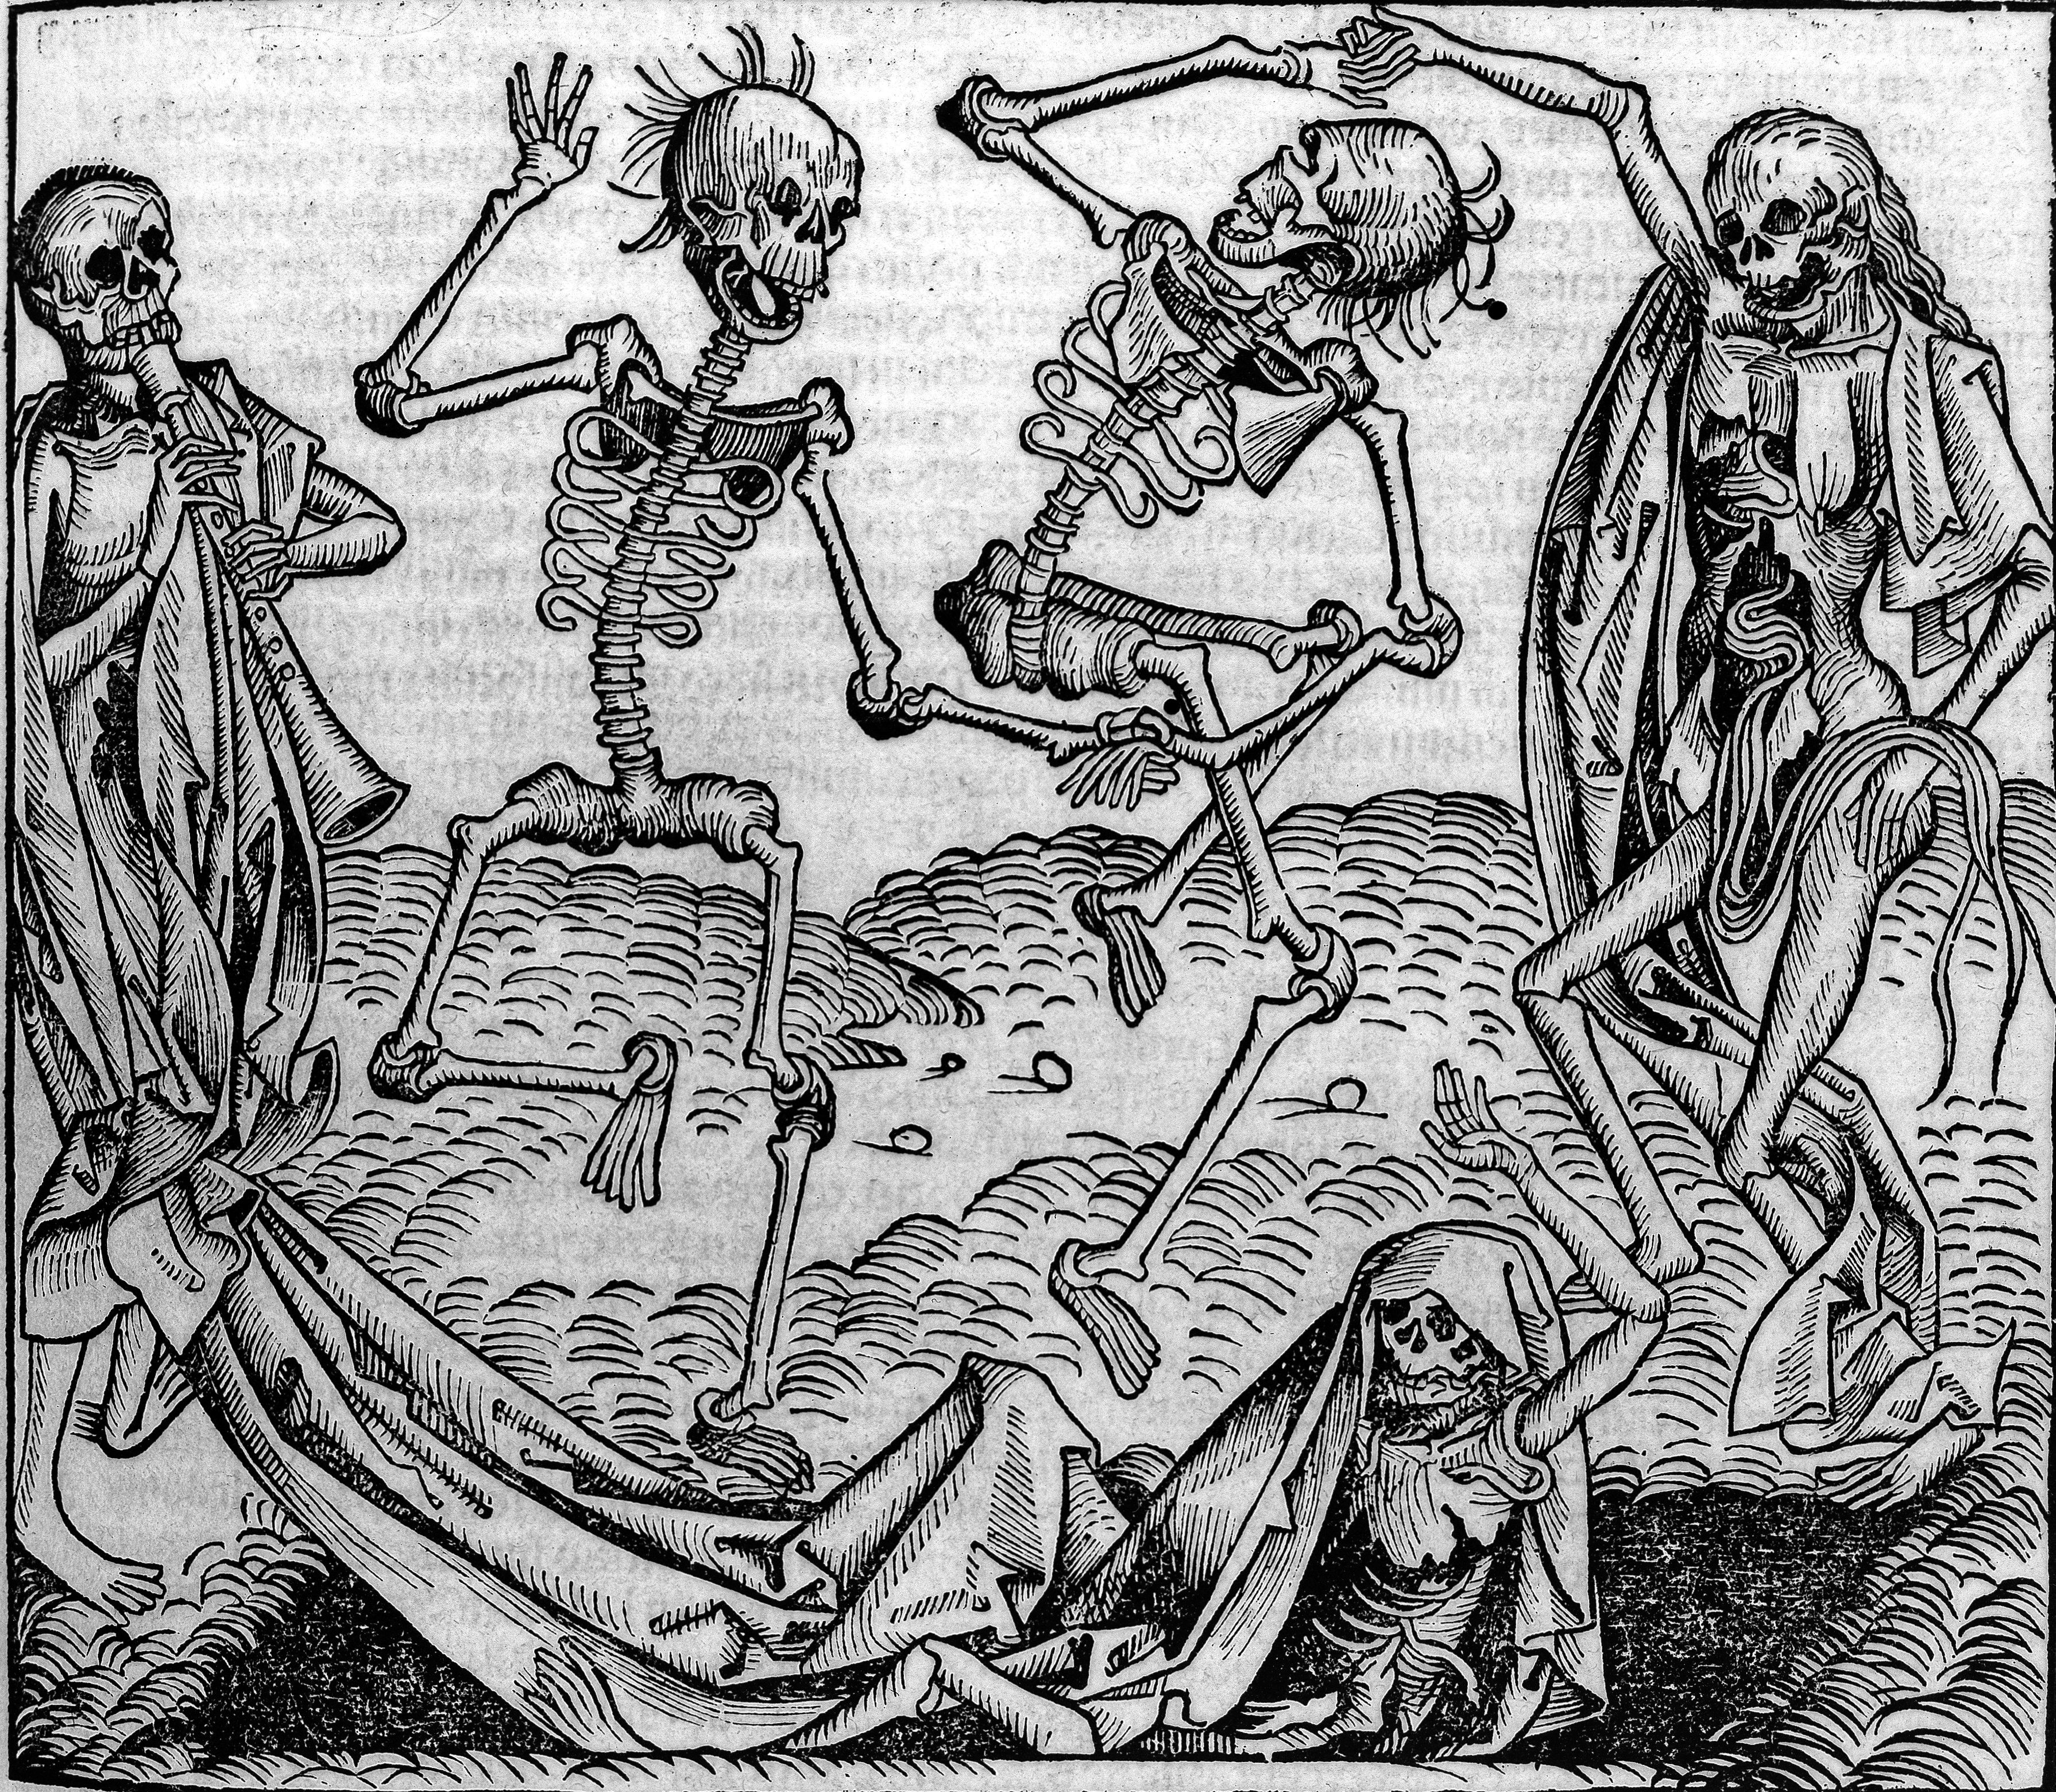 Engraving of dancing skeletons